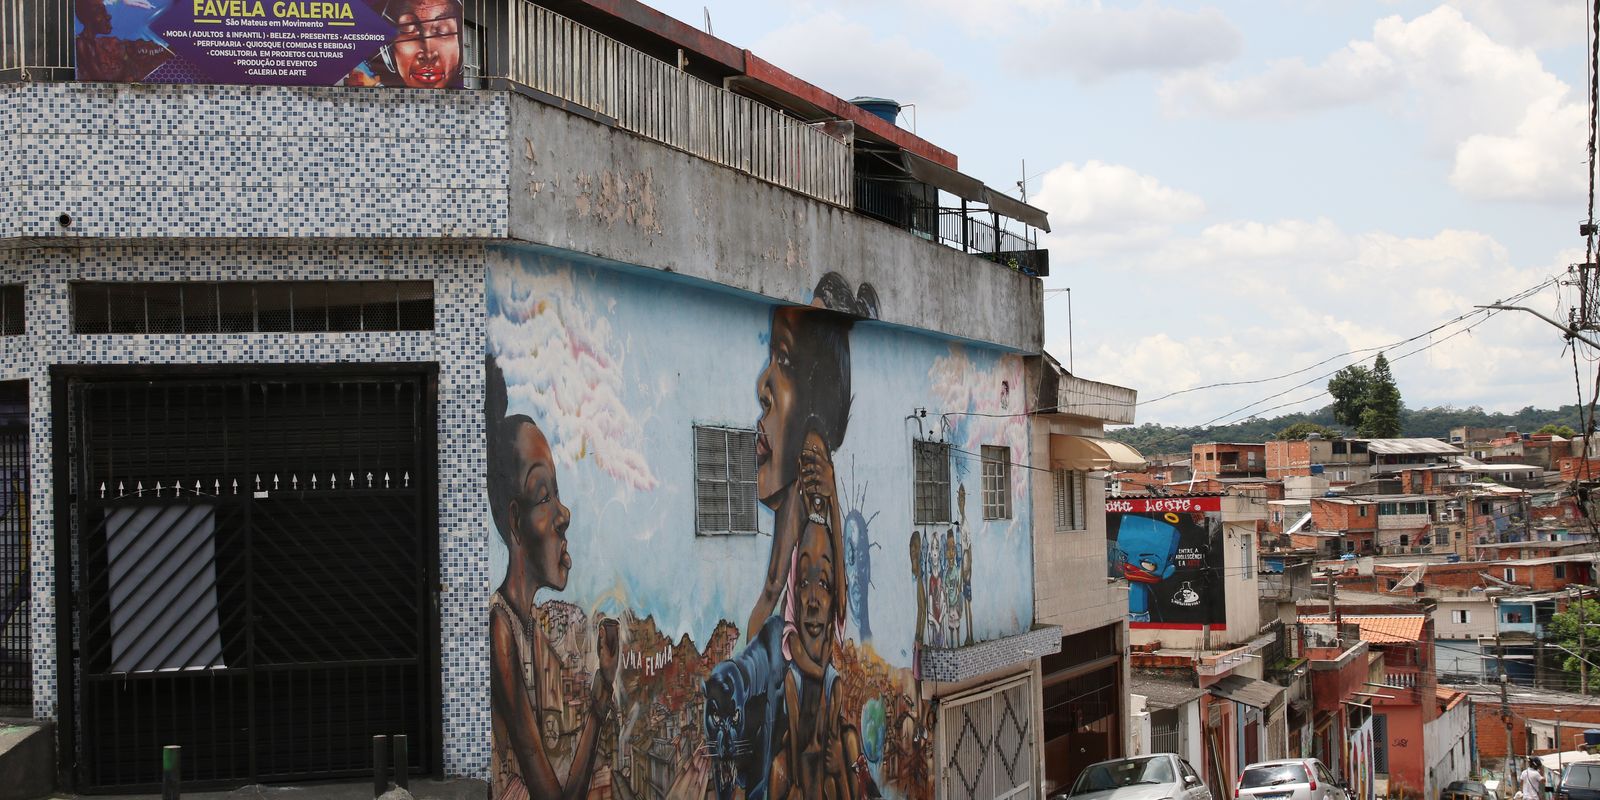 Favelas brasileiras: 76% dos moradores têm ou querem ter um negócio